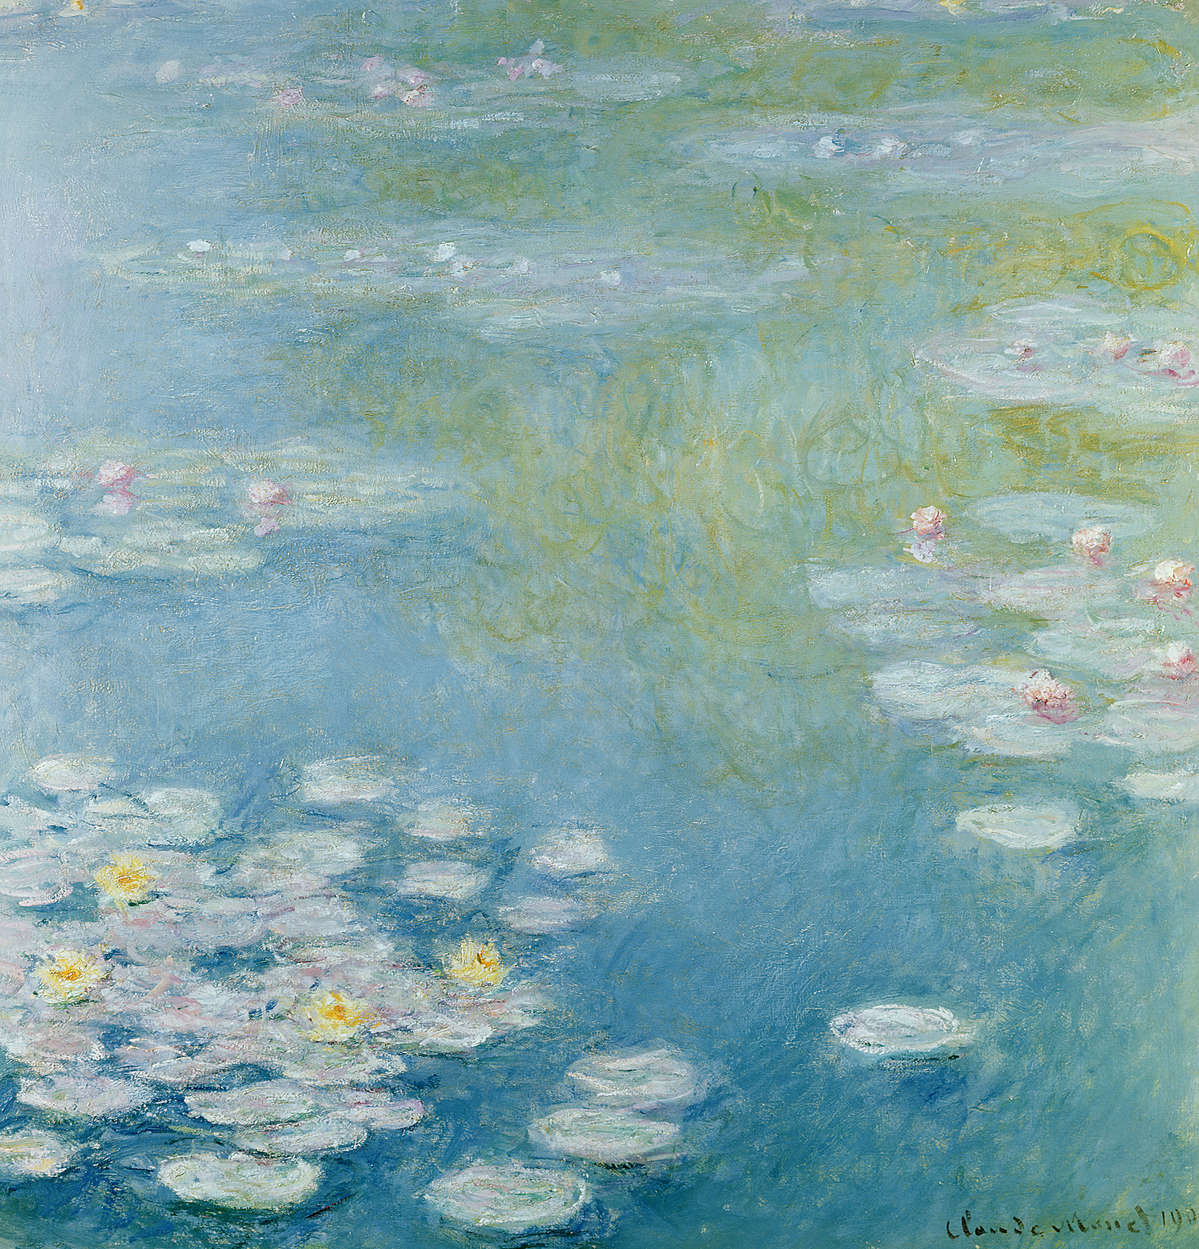             Papier peint panoramique "Nymphes à Giverny" de Claude Monet
        